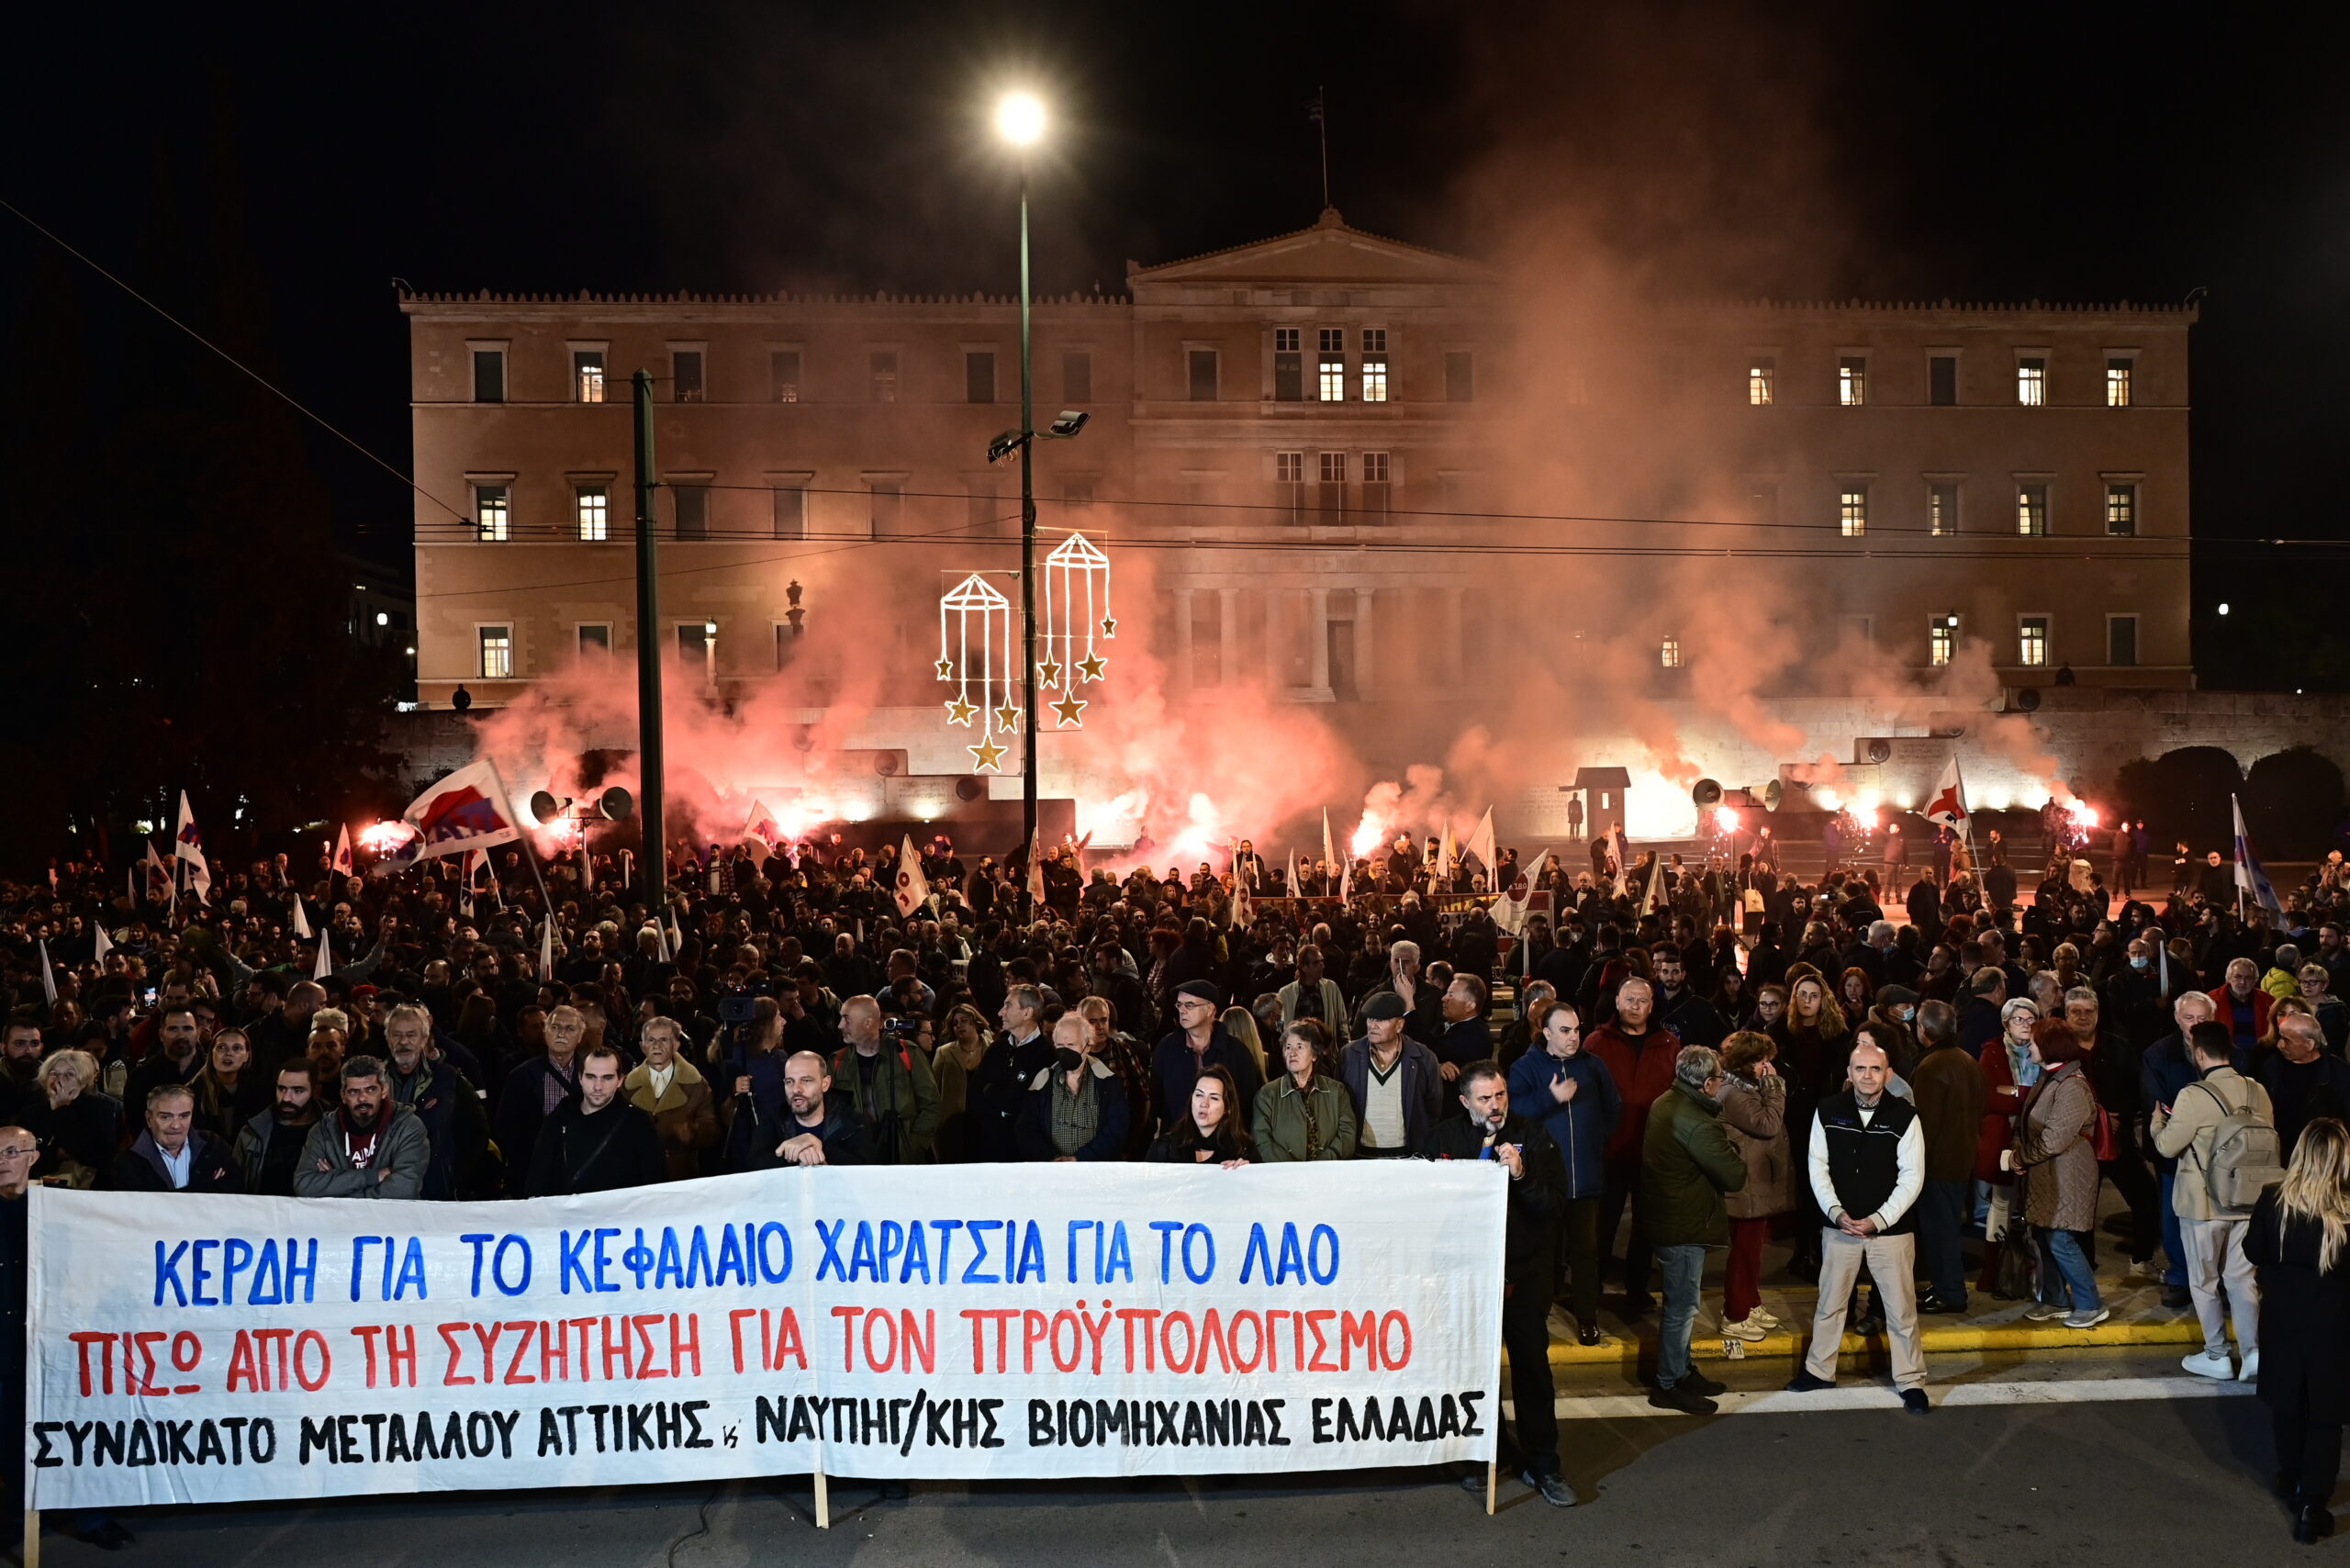 Αποκαταστάθηκε η κυκλοφορία των οχημάτων στο κέντρο της Αθήνας μετά το συλλαλητήριο για τον προϋπολογισμό – Ποιοι συμμετείχαν